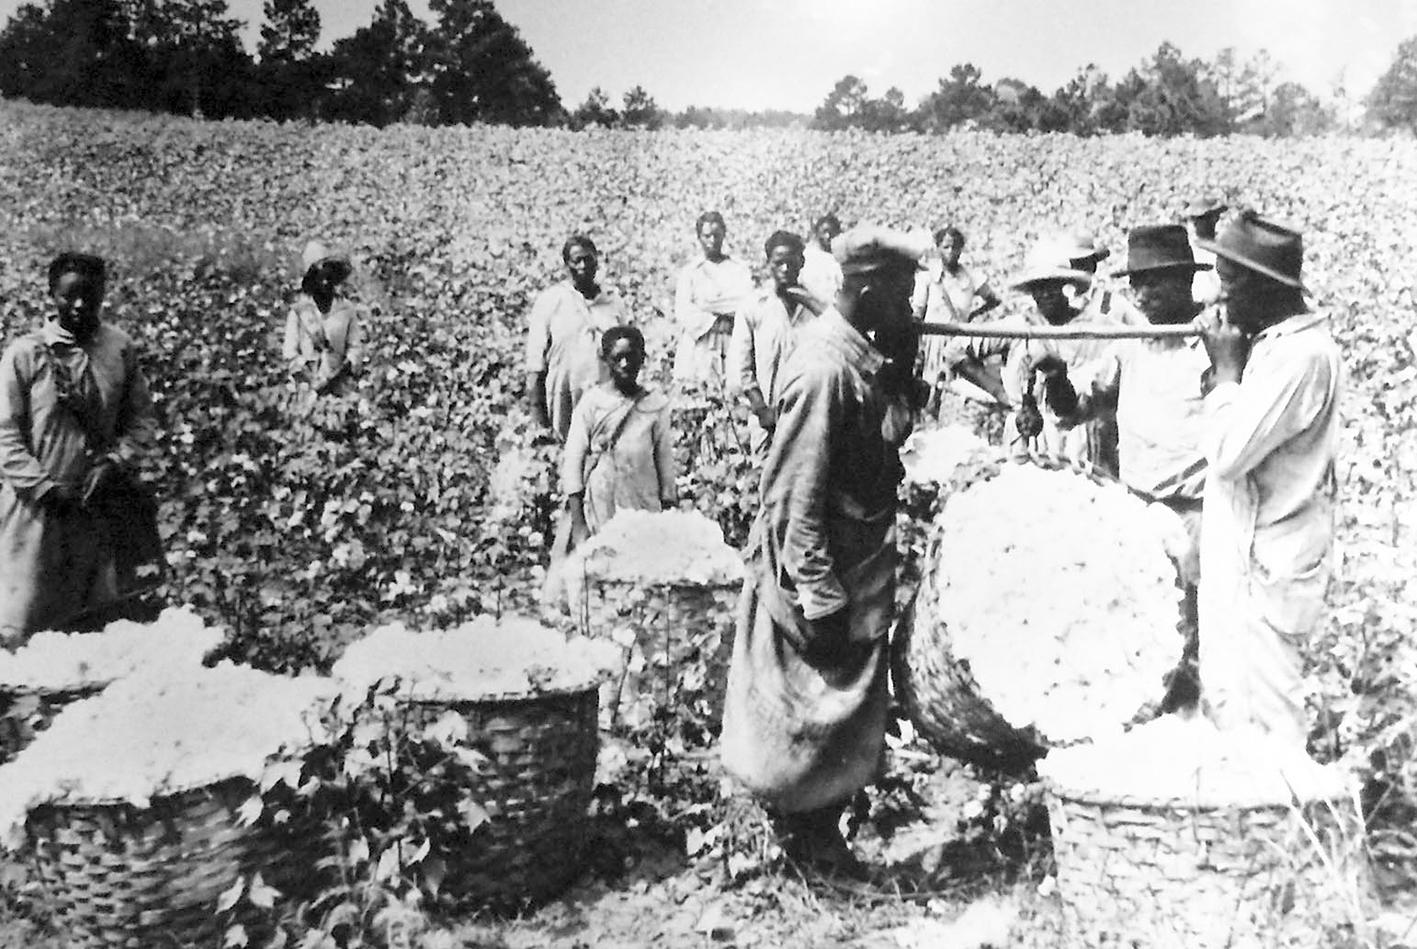 Svarta slavar på ett bomullsfält i den amerikanska södern. 1860 beräknas det ha funnits 3,5 miljoner förslavade afrikaner i landet. Slaveriet förbjöds i USA efter inbördeskriget 1865.